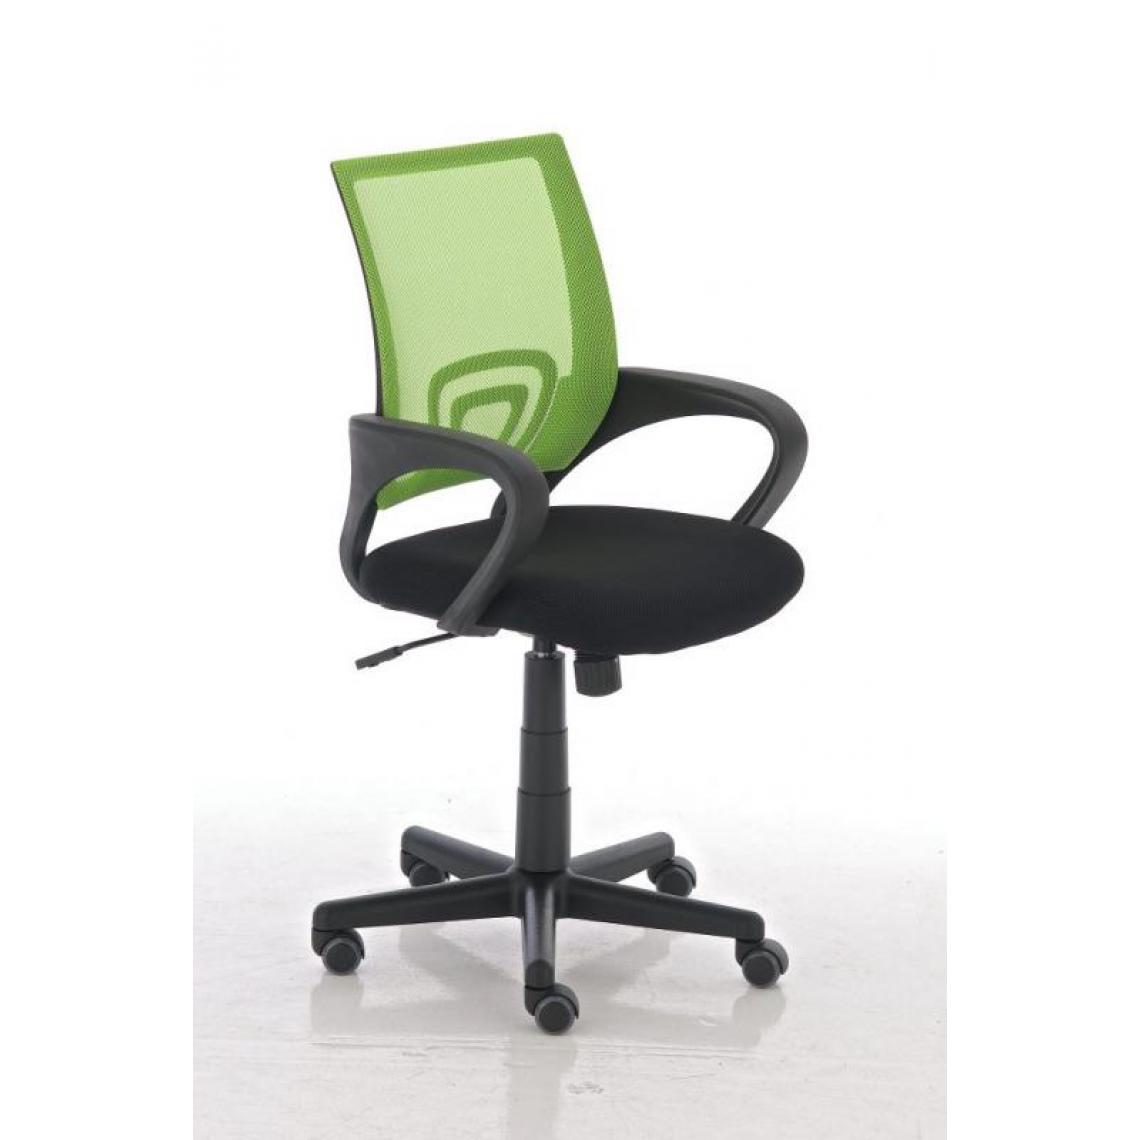 Icaverne - Joli Chaise de bureau Lima couleur vert - Chaises